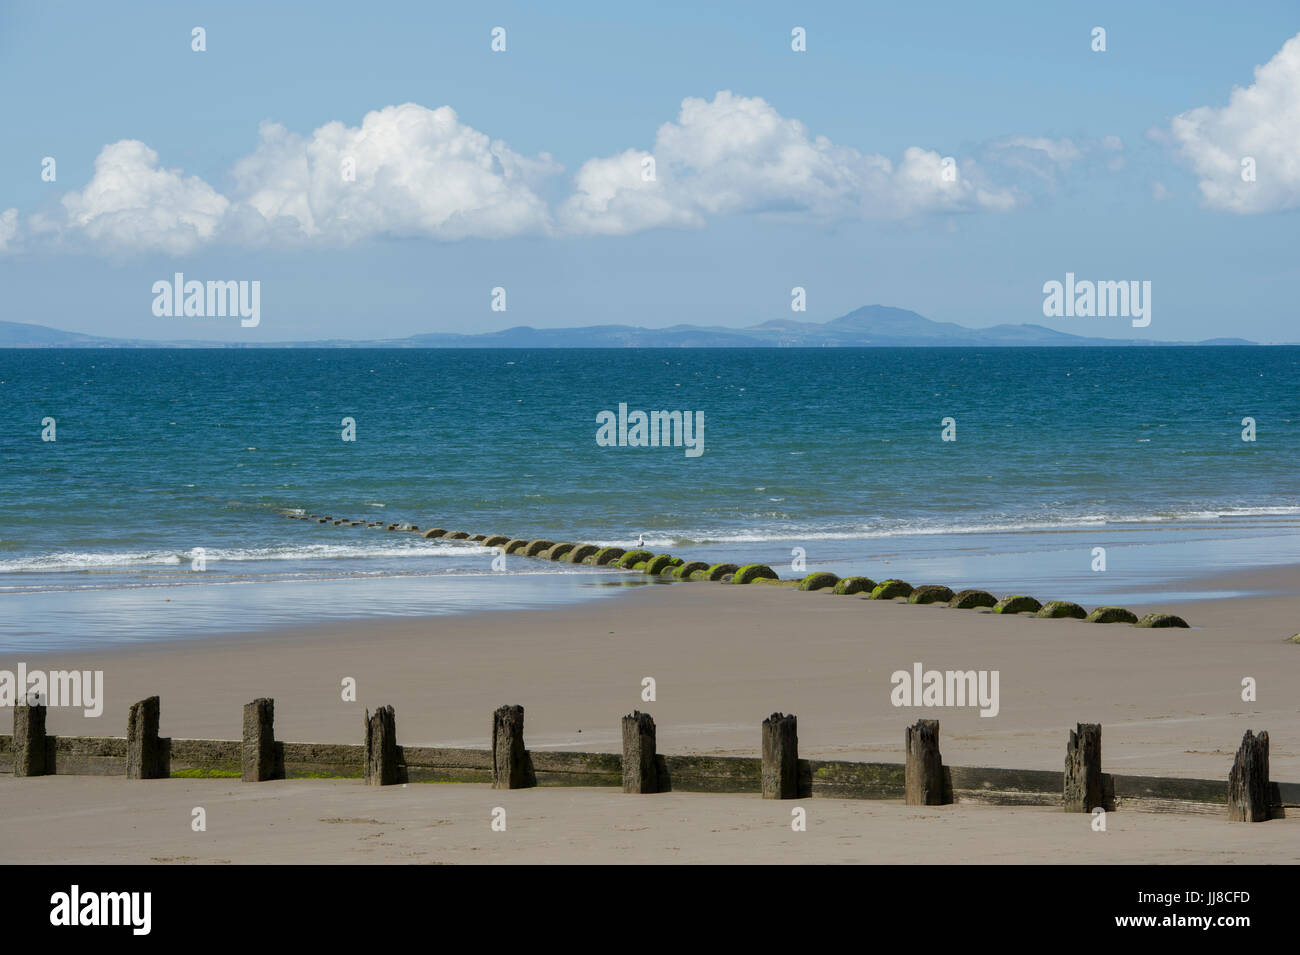 La vista dalla spiaggia a Blaenau Ffestiniog in Galles guardano Cardigan Bay per la penisola di Llŷn (Pen Llŷn) all'orizzonte Foto Stock